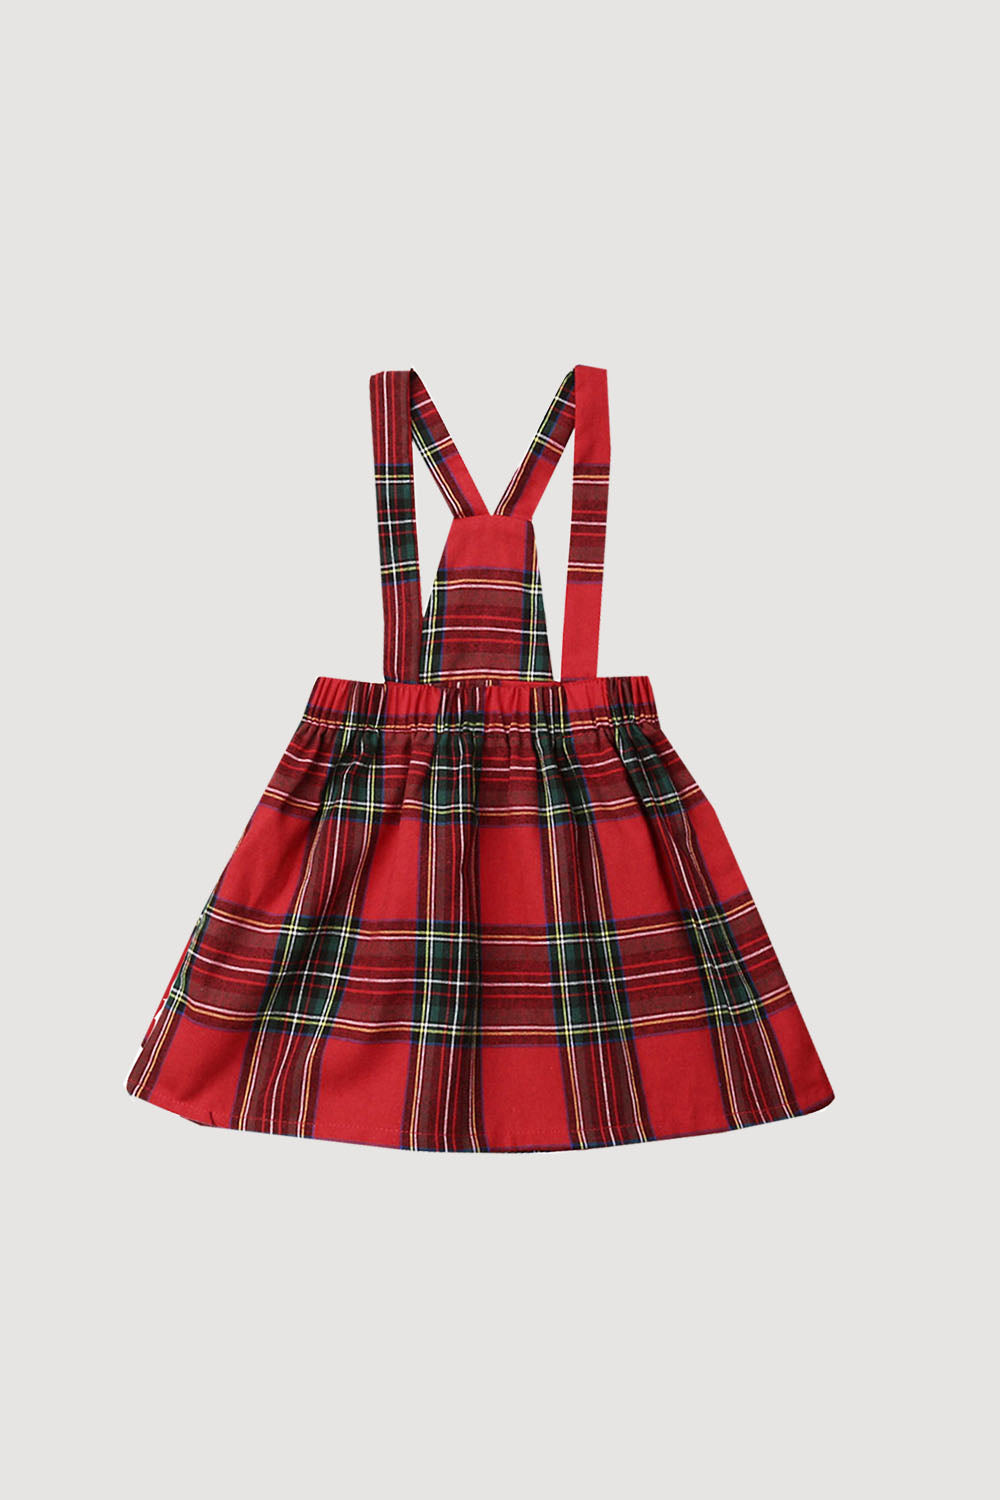 GIRLS - Red Plaid Suspender Skirt - Hannah Rose Vintage Boutique